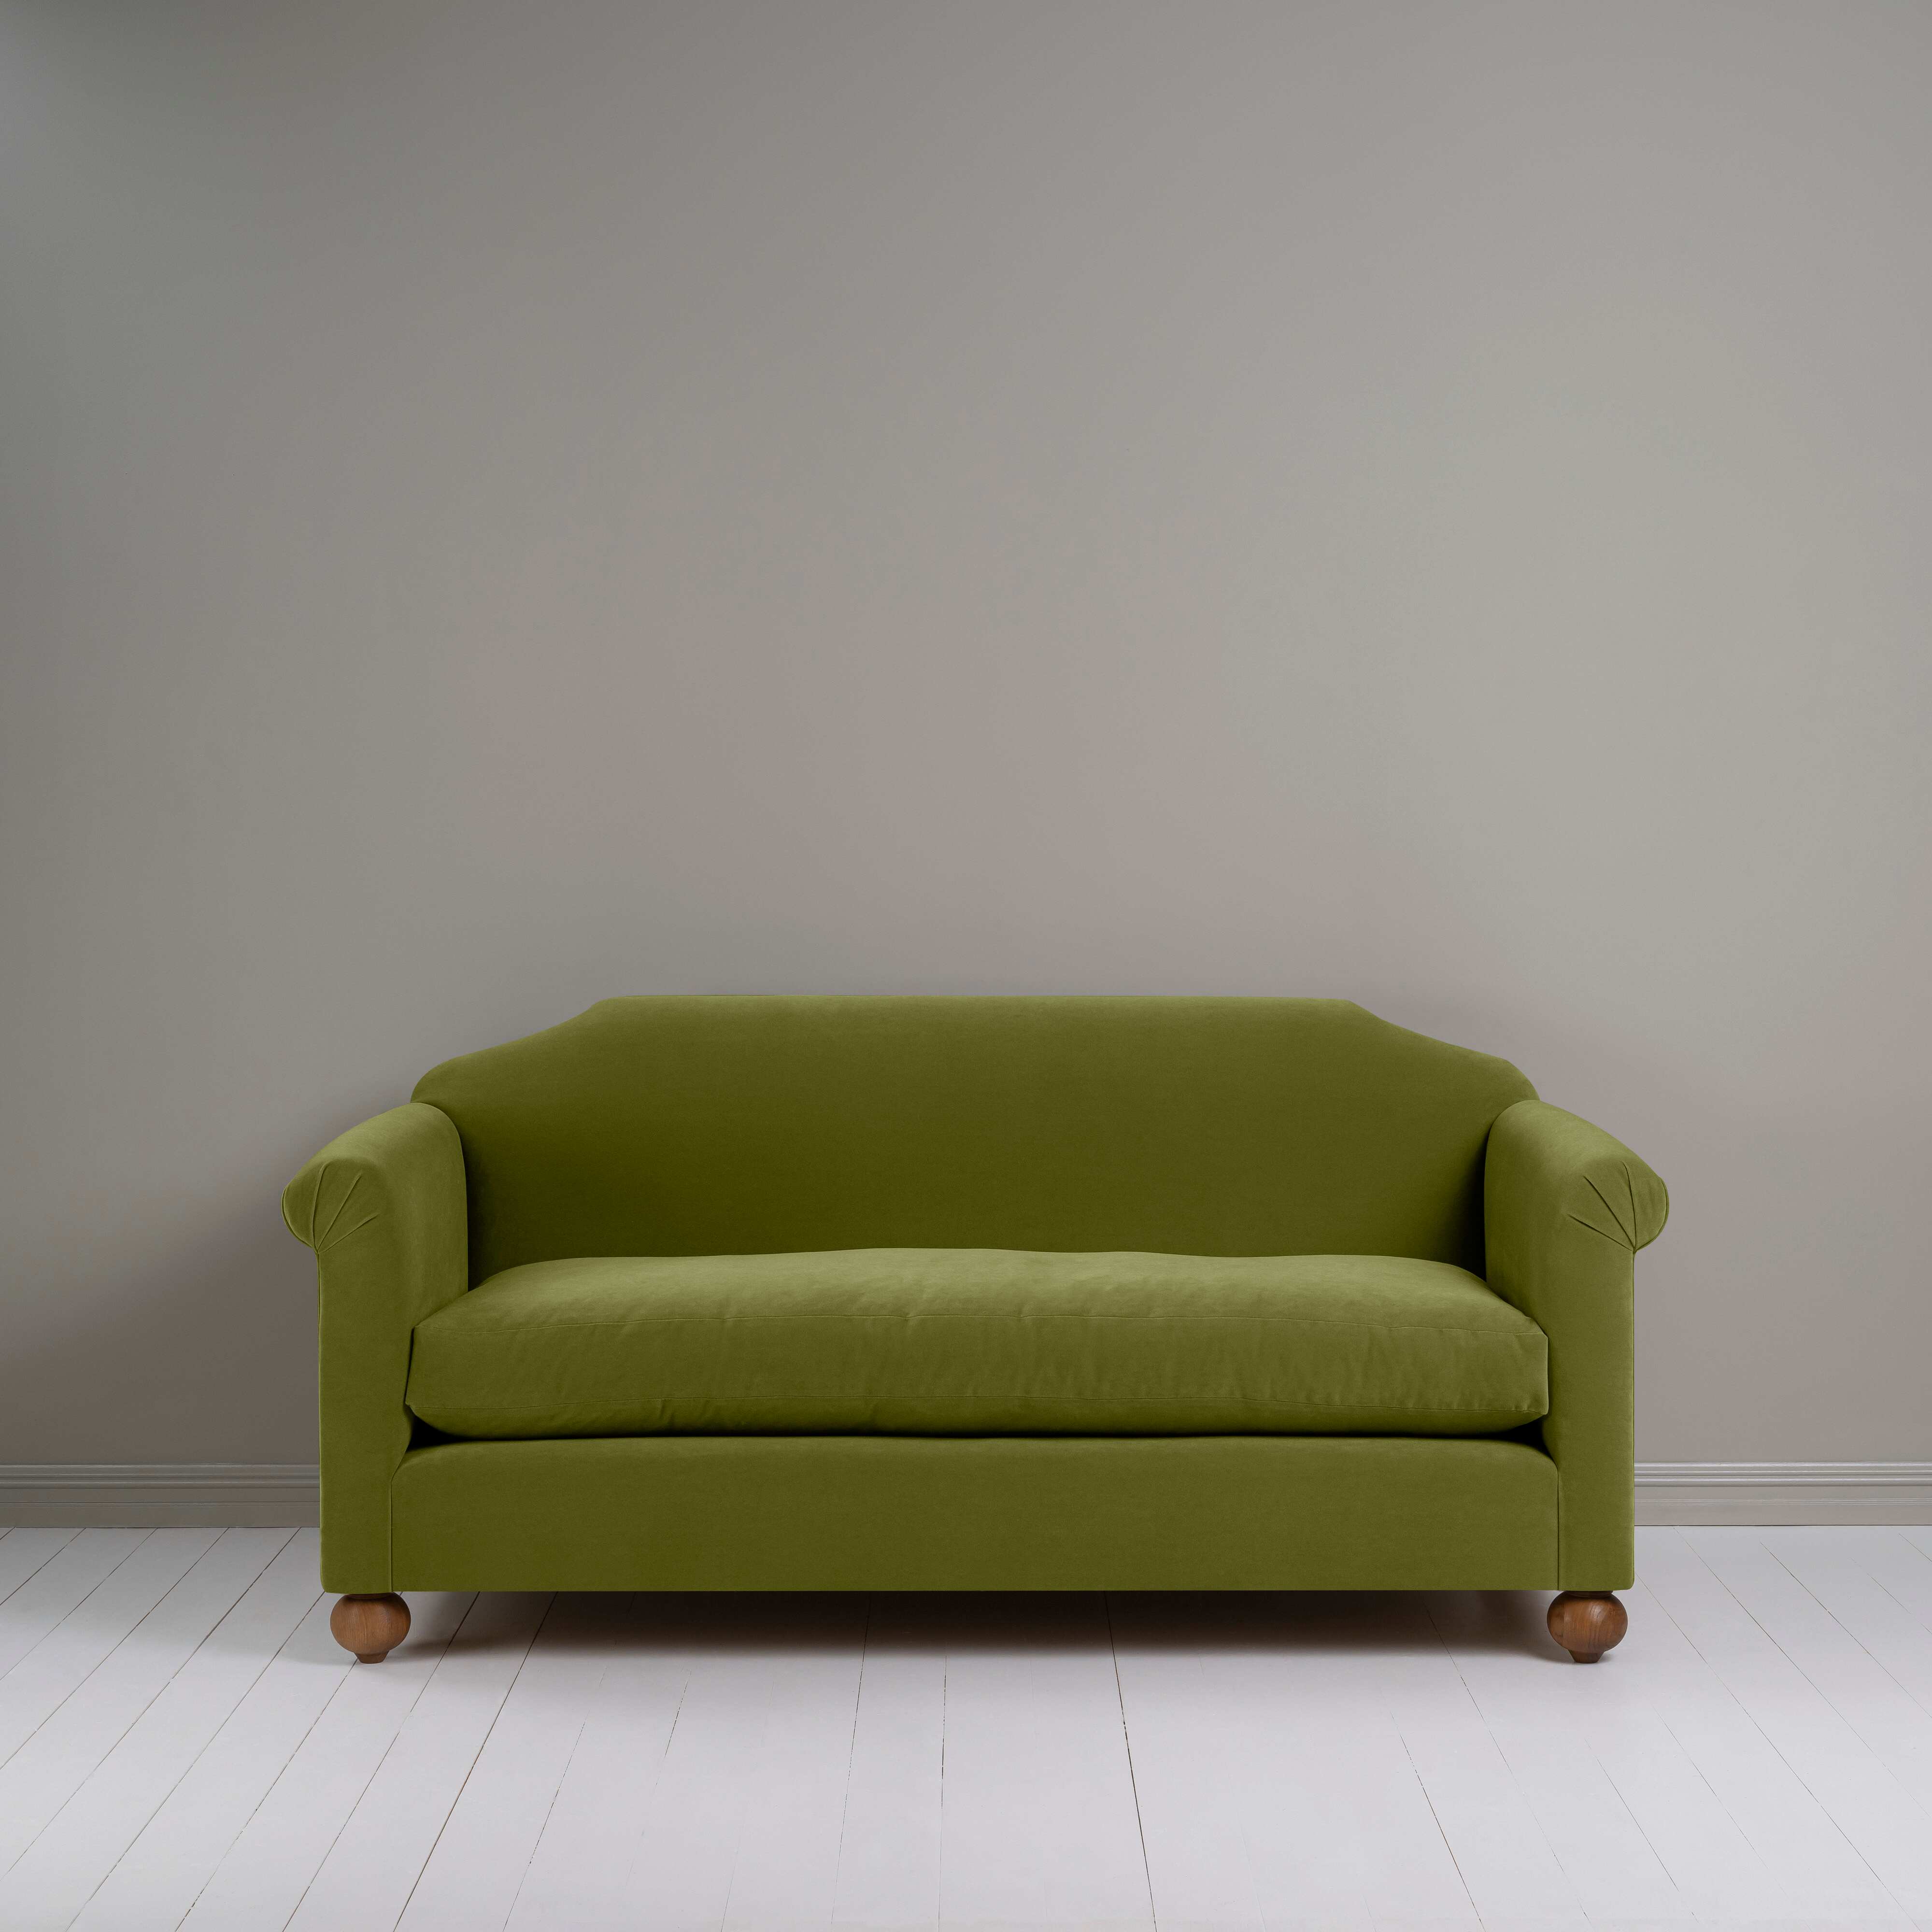  Dolittle 3 Seater Sofa in Intelligent Velvet Lawn 